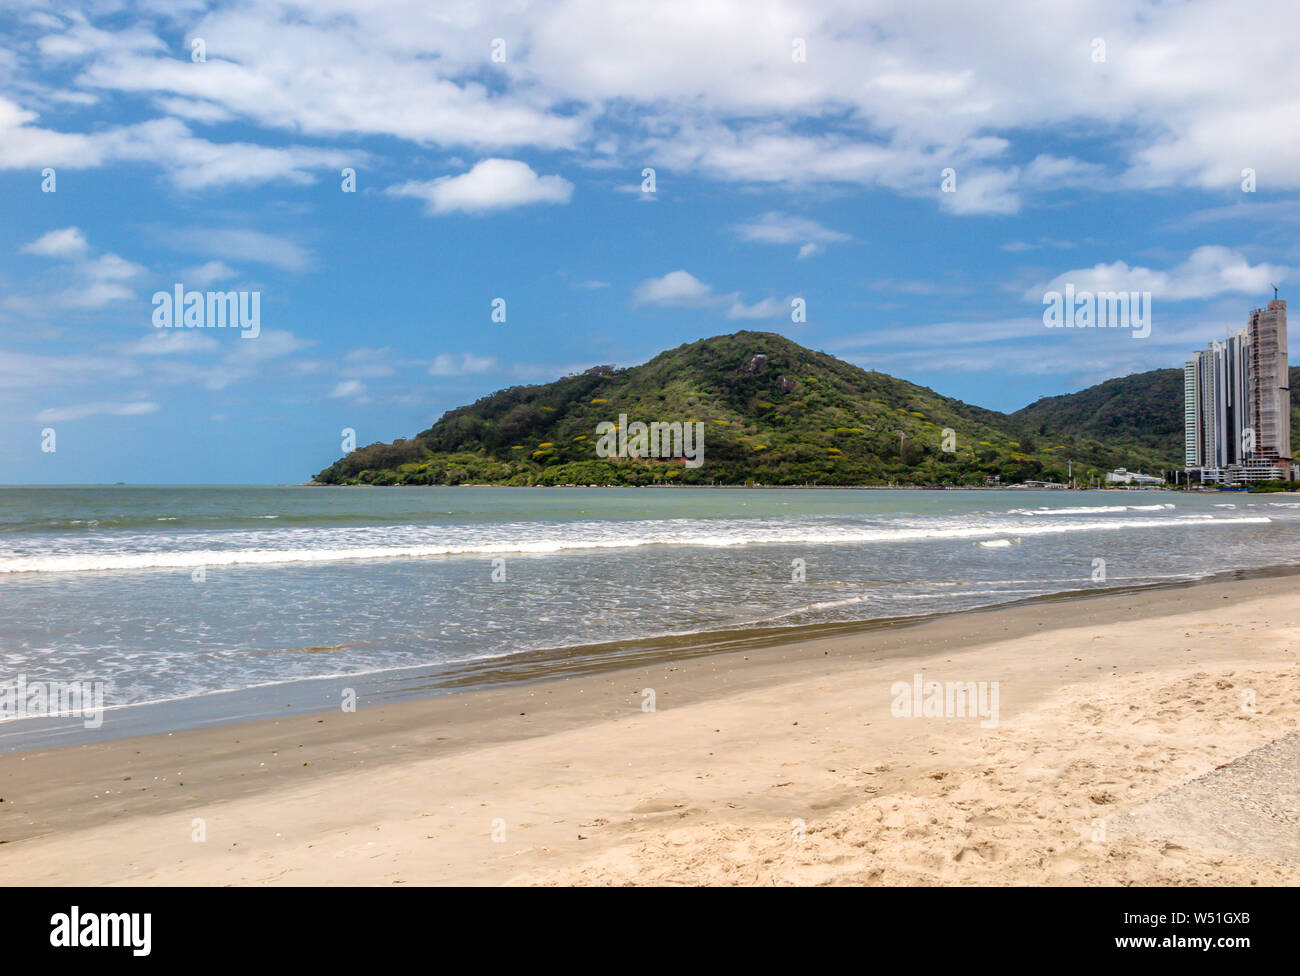 Vista dal lato destro del Balneário Camboriú spiaggia centrale con una collina in background e cielo blu con nuvole Foto Stock